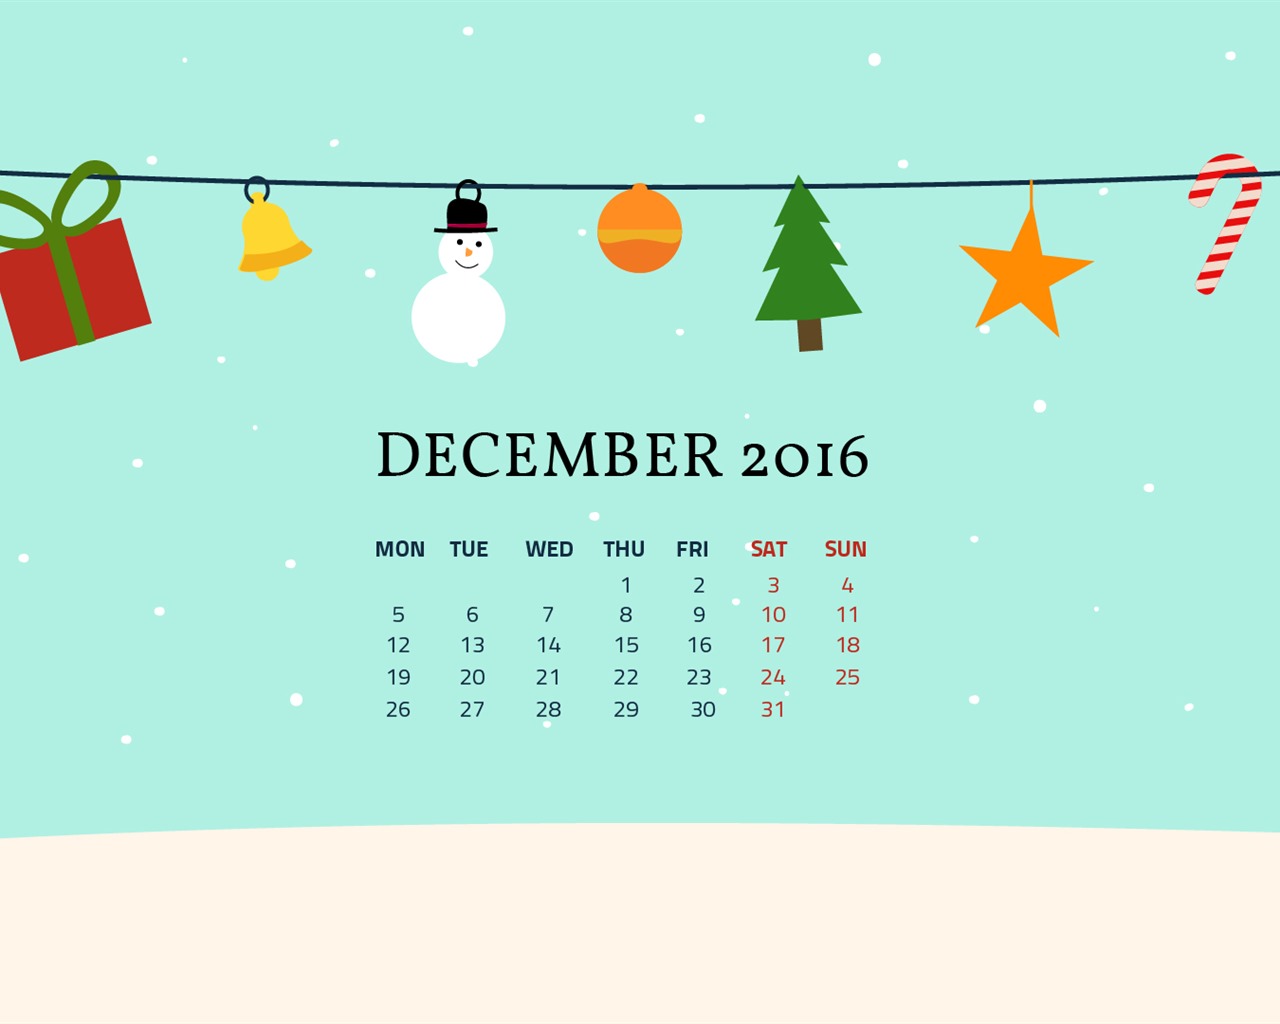 December 2016 Christmas theme calendar wallpaper (1) #14 - 1280x1024